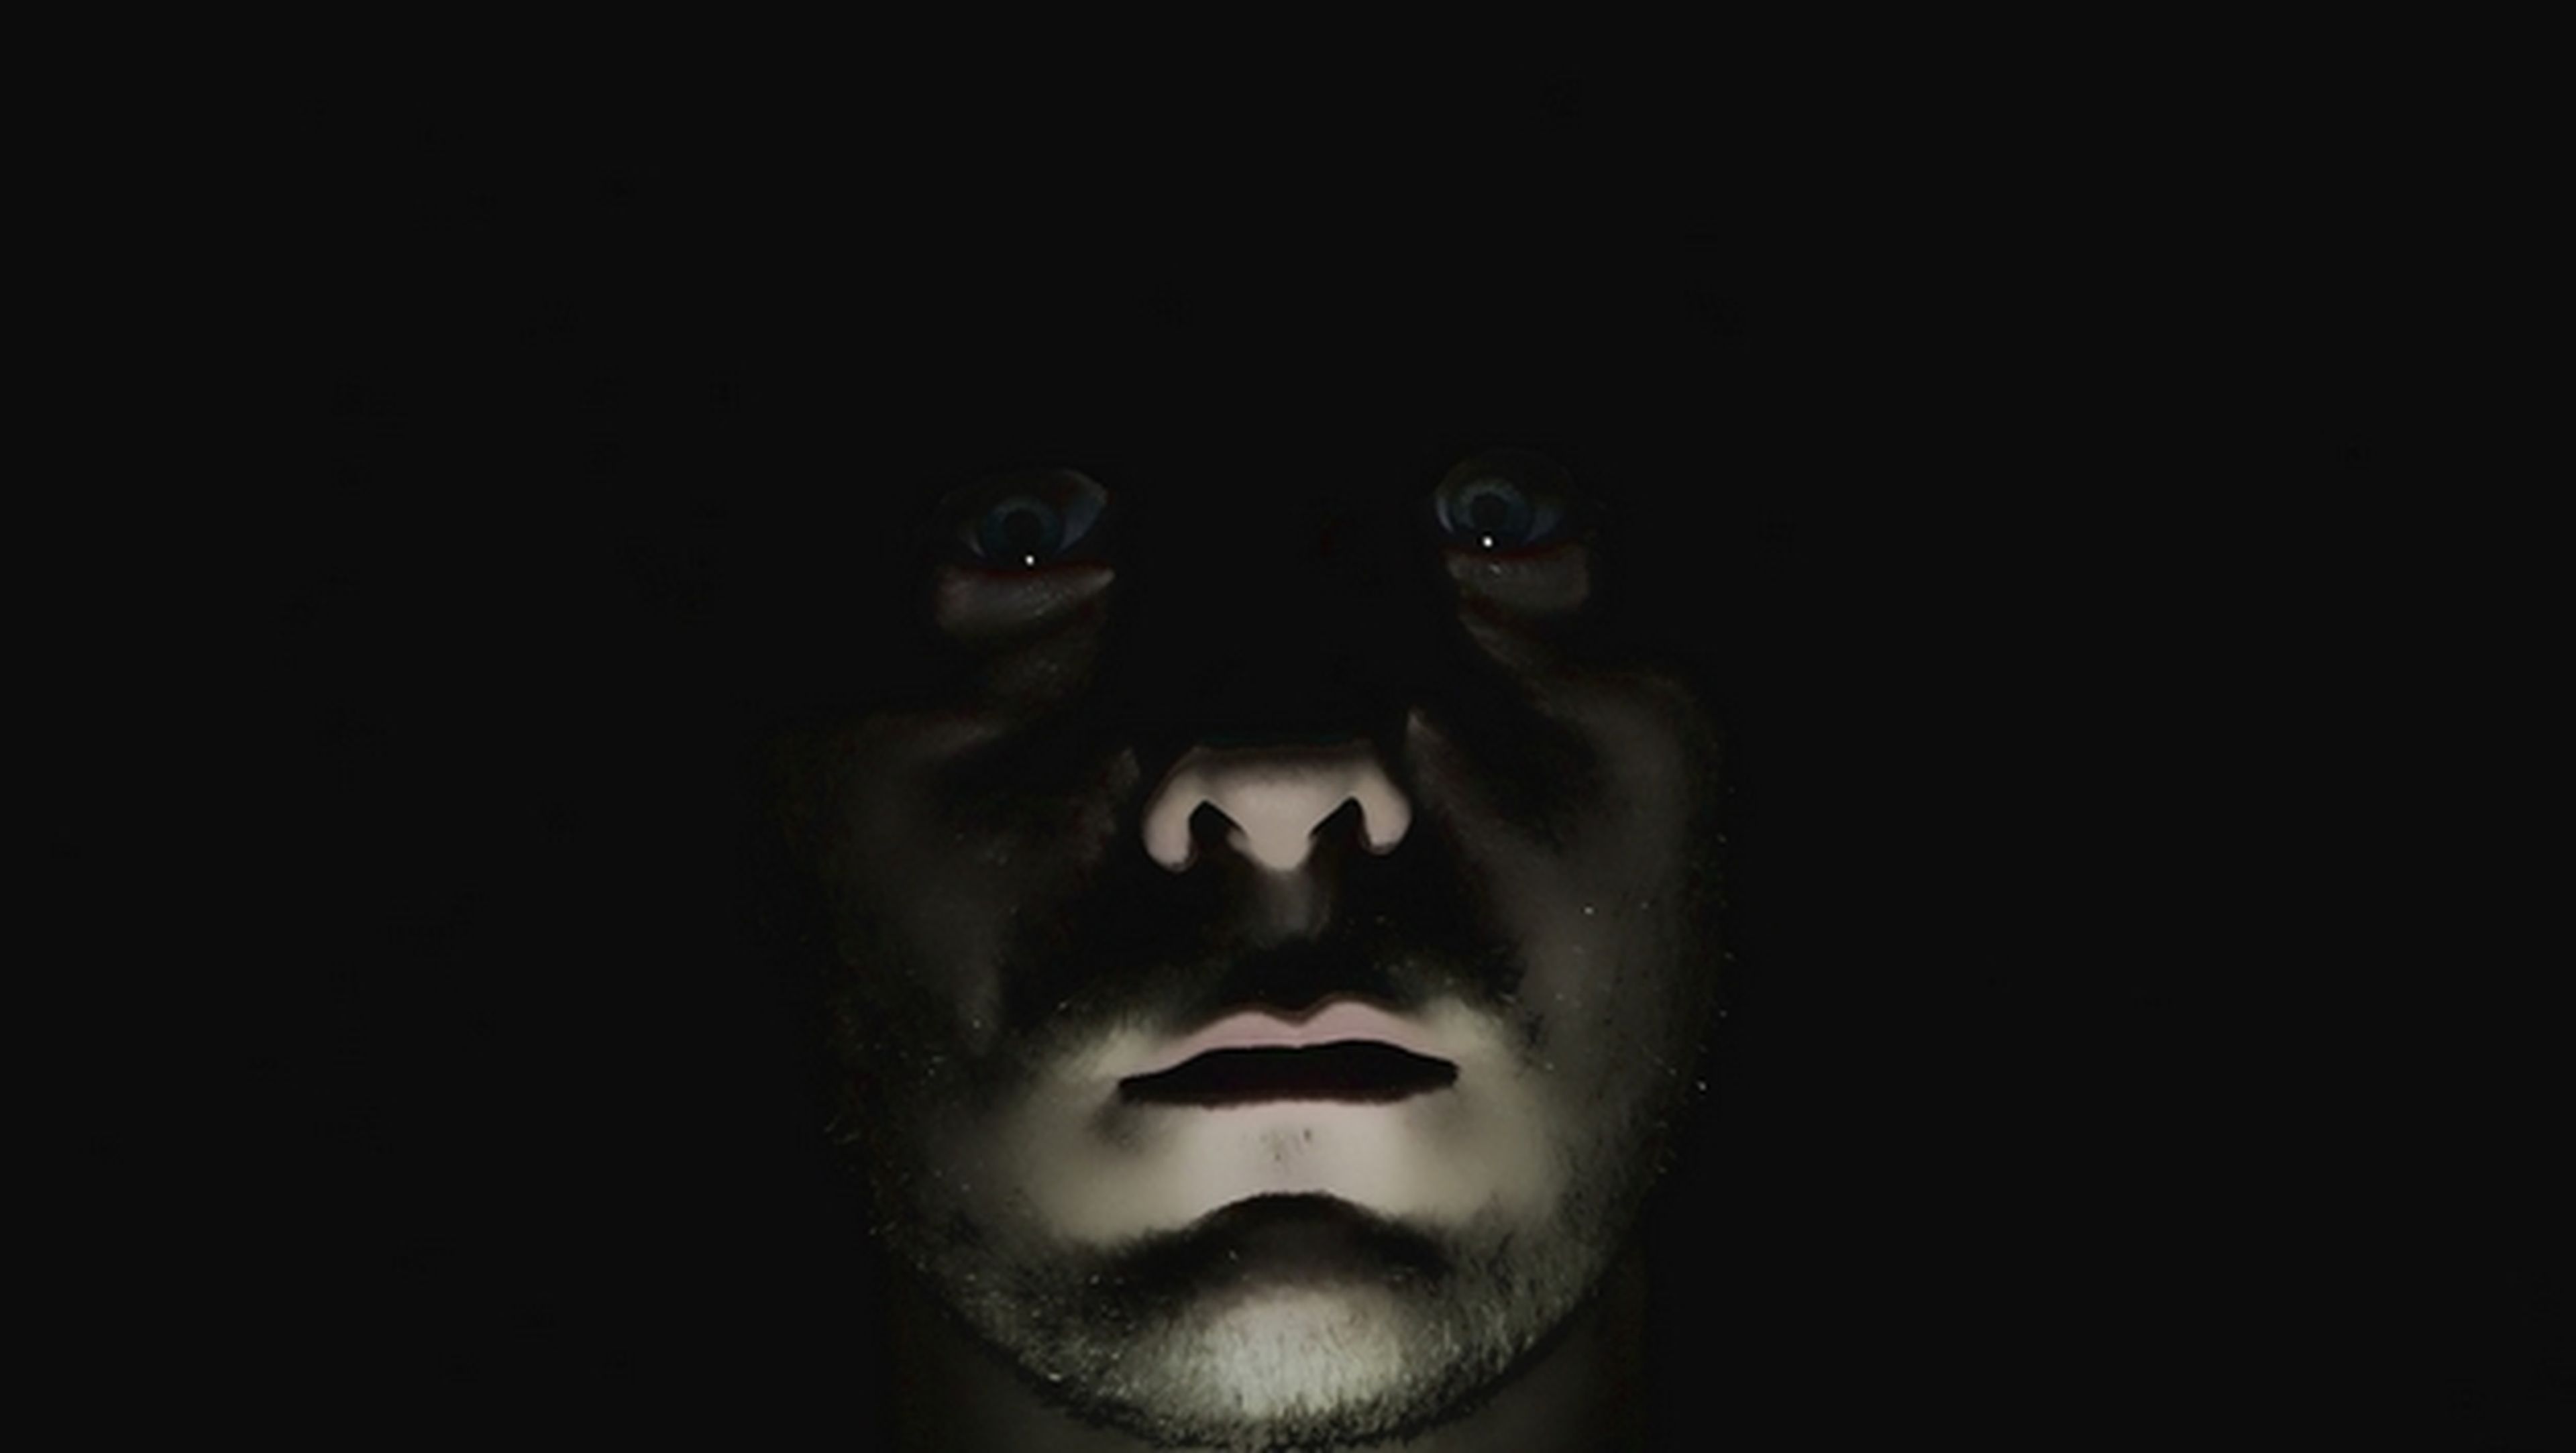 Una cámara consigue reconocer rostros... completamente a oscuras.